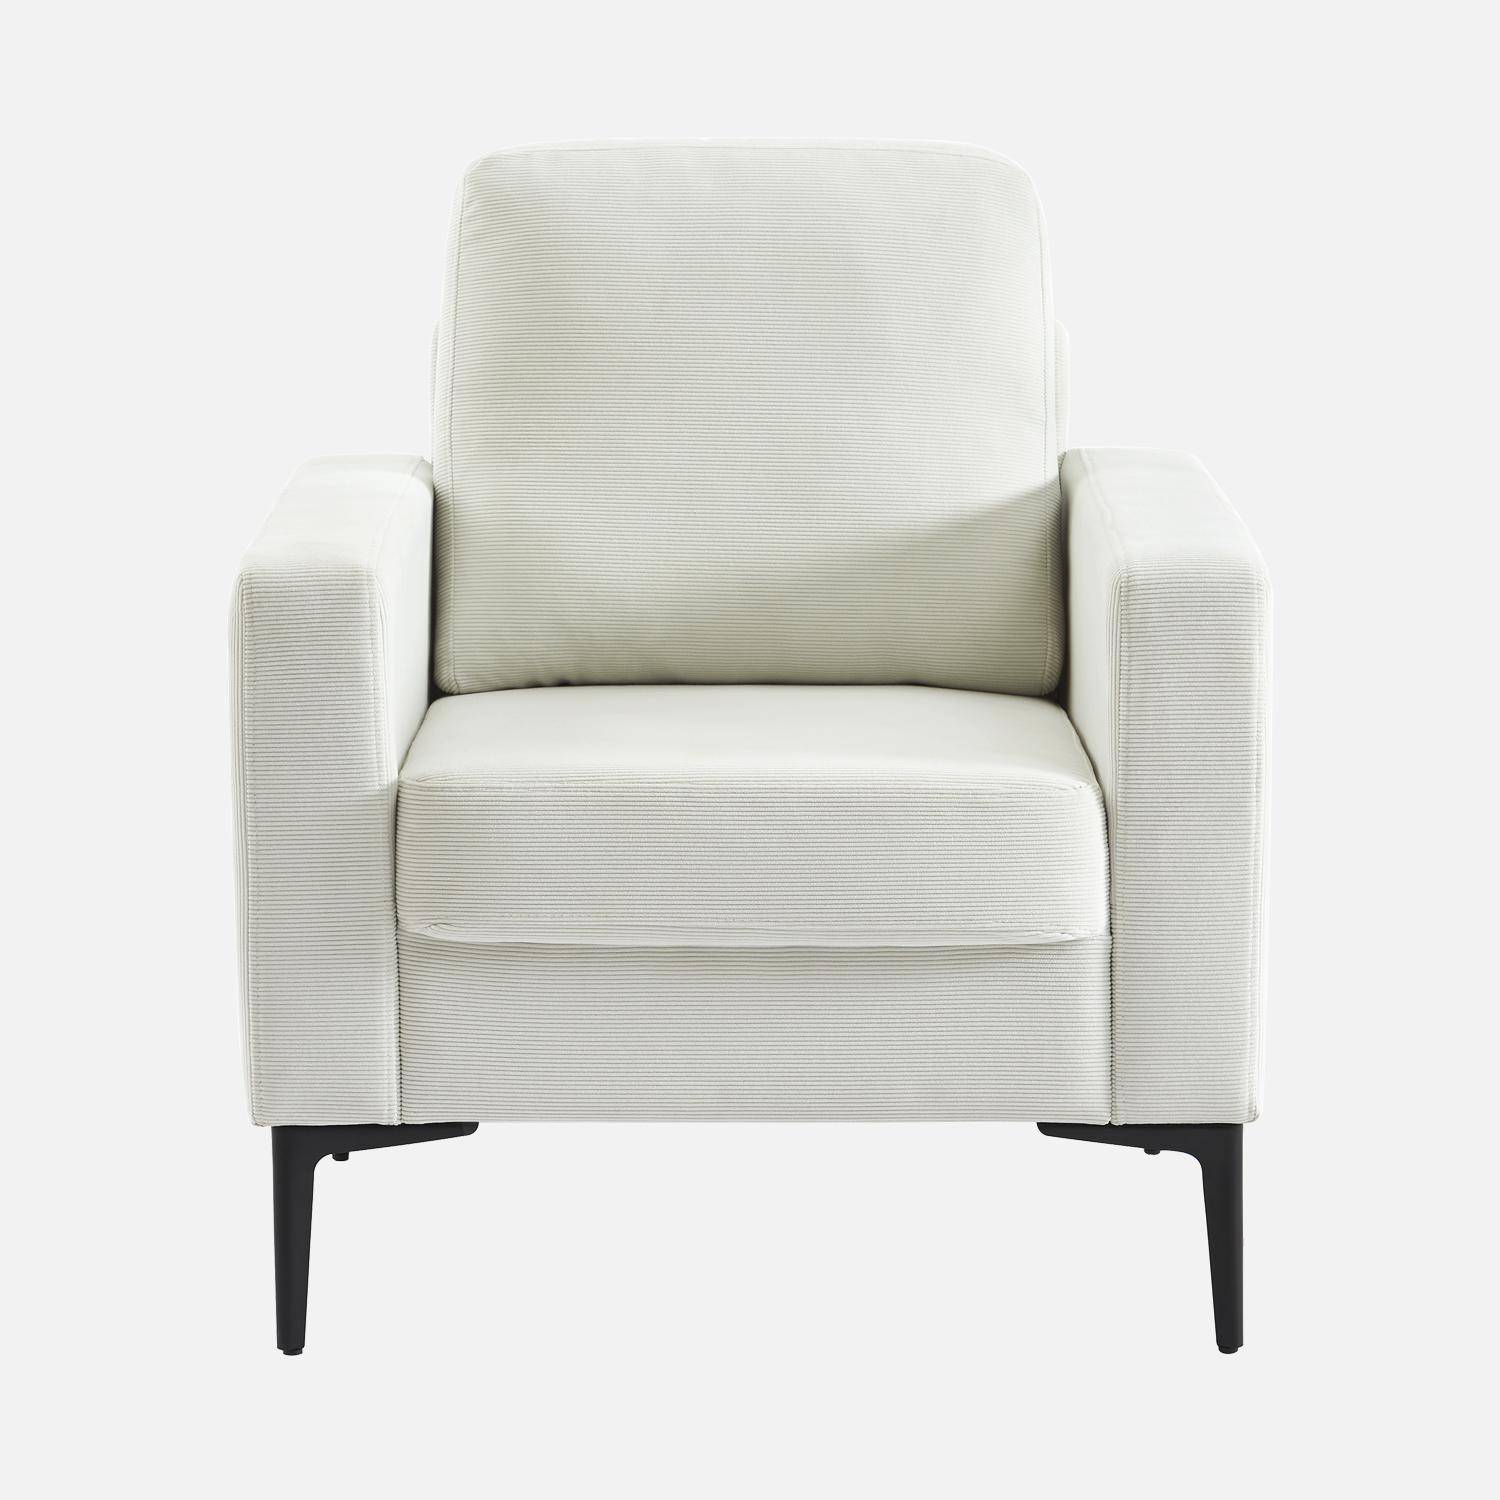 Witte corduroy fauteuil, Bjorn, 1-zits, met metalen poten Photo4